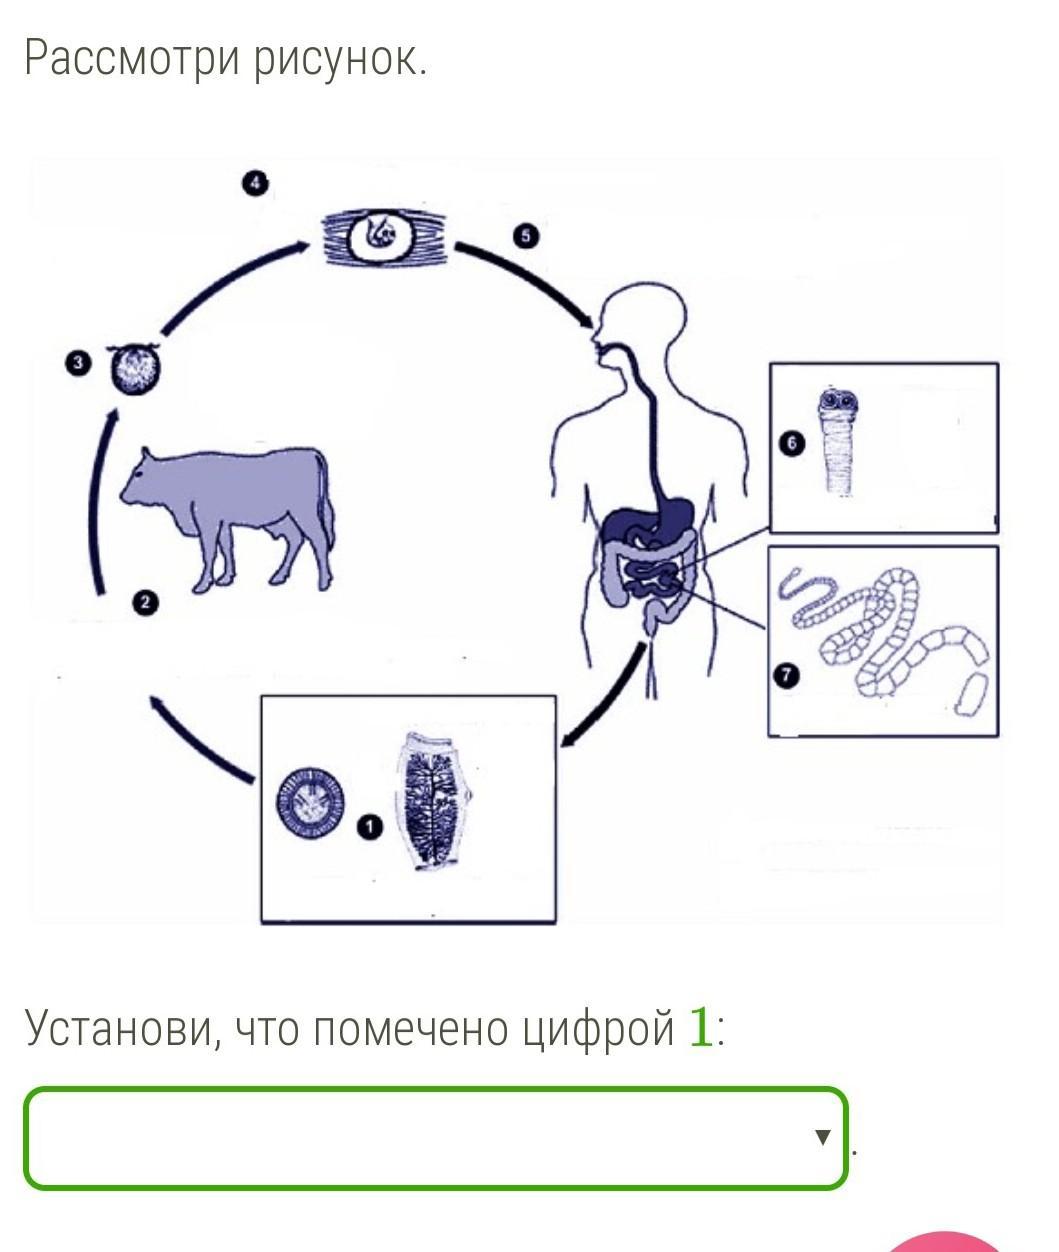 Ленточные жизненный цикл. Схема развития бычьего цепня. Жизненный цикл бычьего цепня. Цикл развития бычьего цепня рисунок. Жизненный цикл бычьего цепня рисунок.